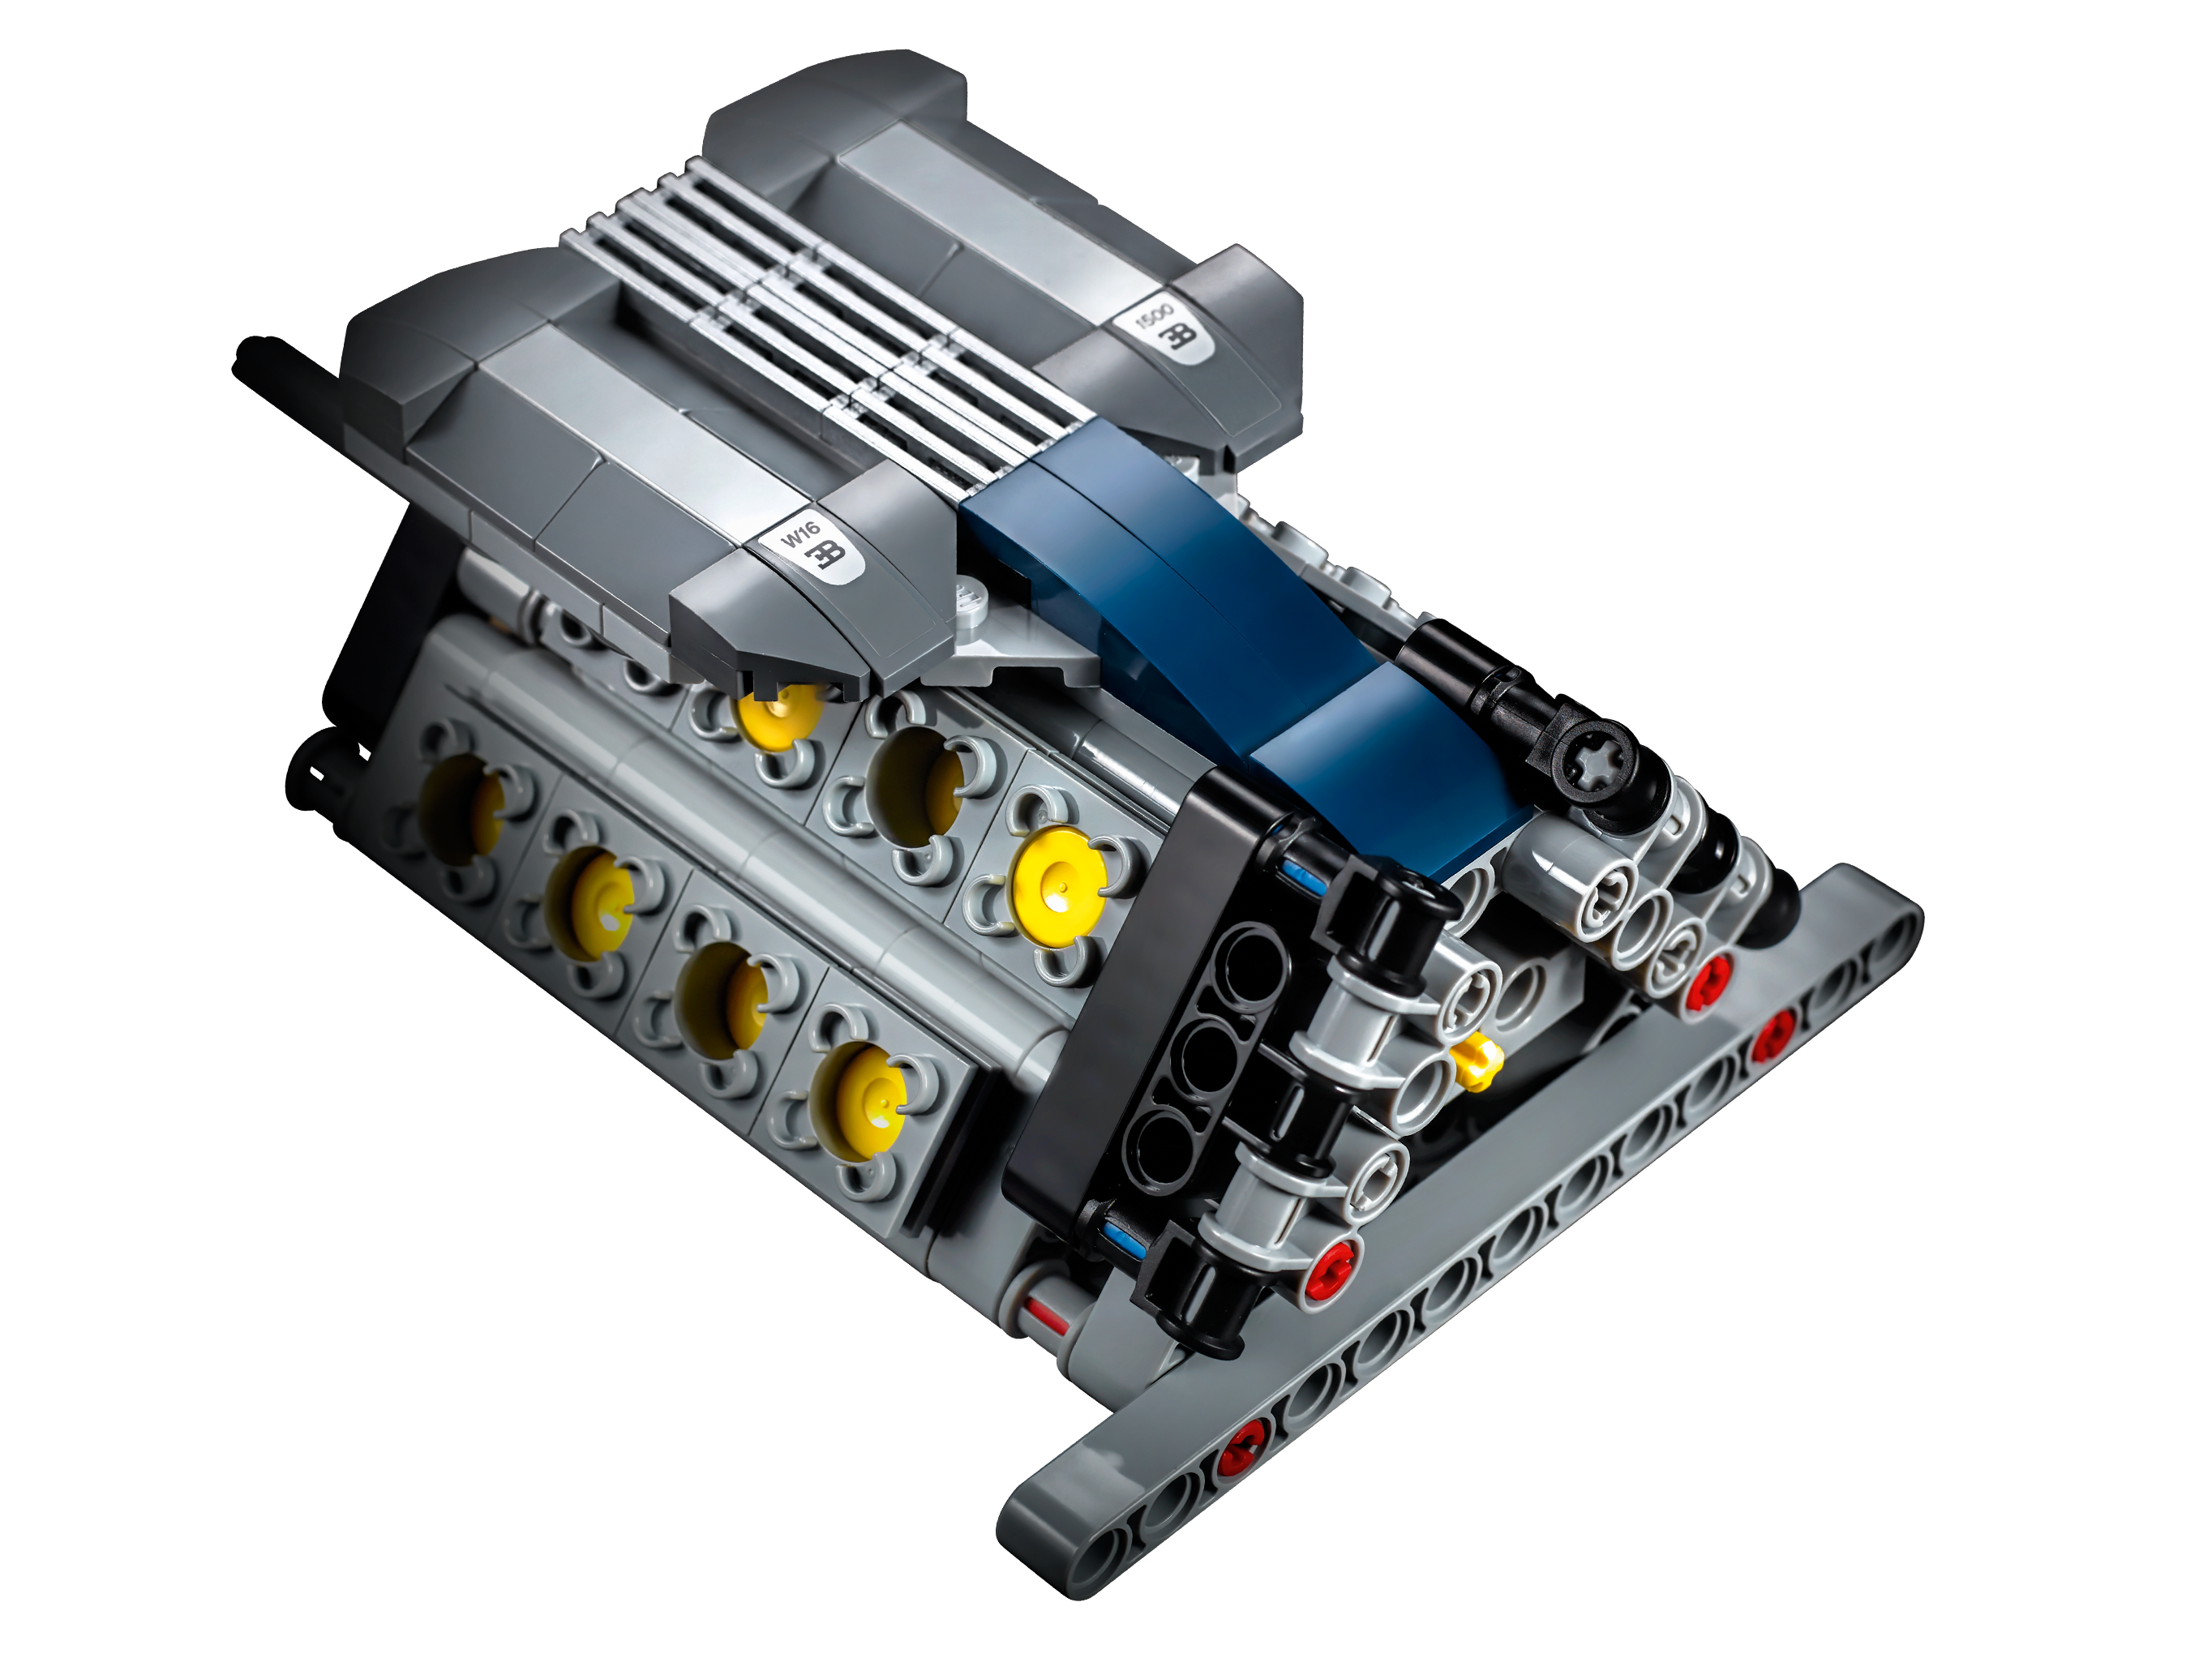 LEGO 42083 Bugatti Chiron - LEGO Technic - BricksDirect Condition